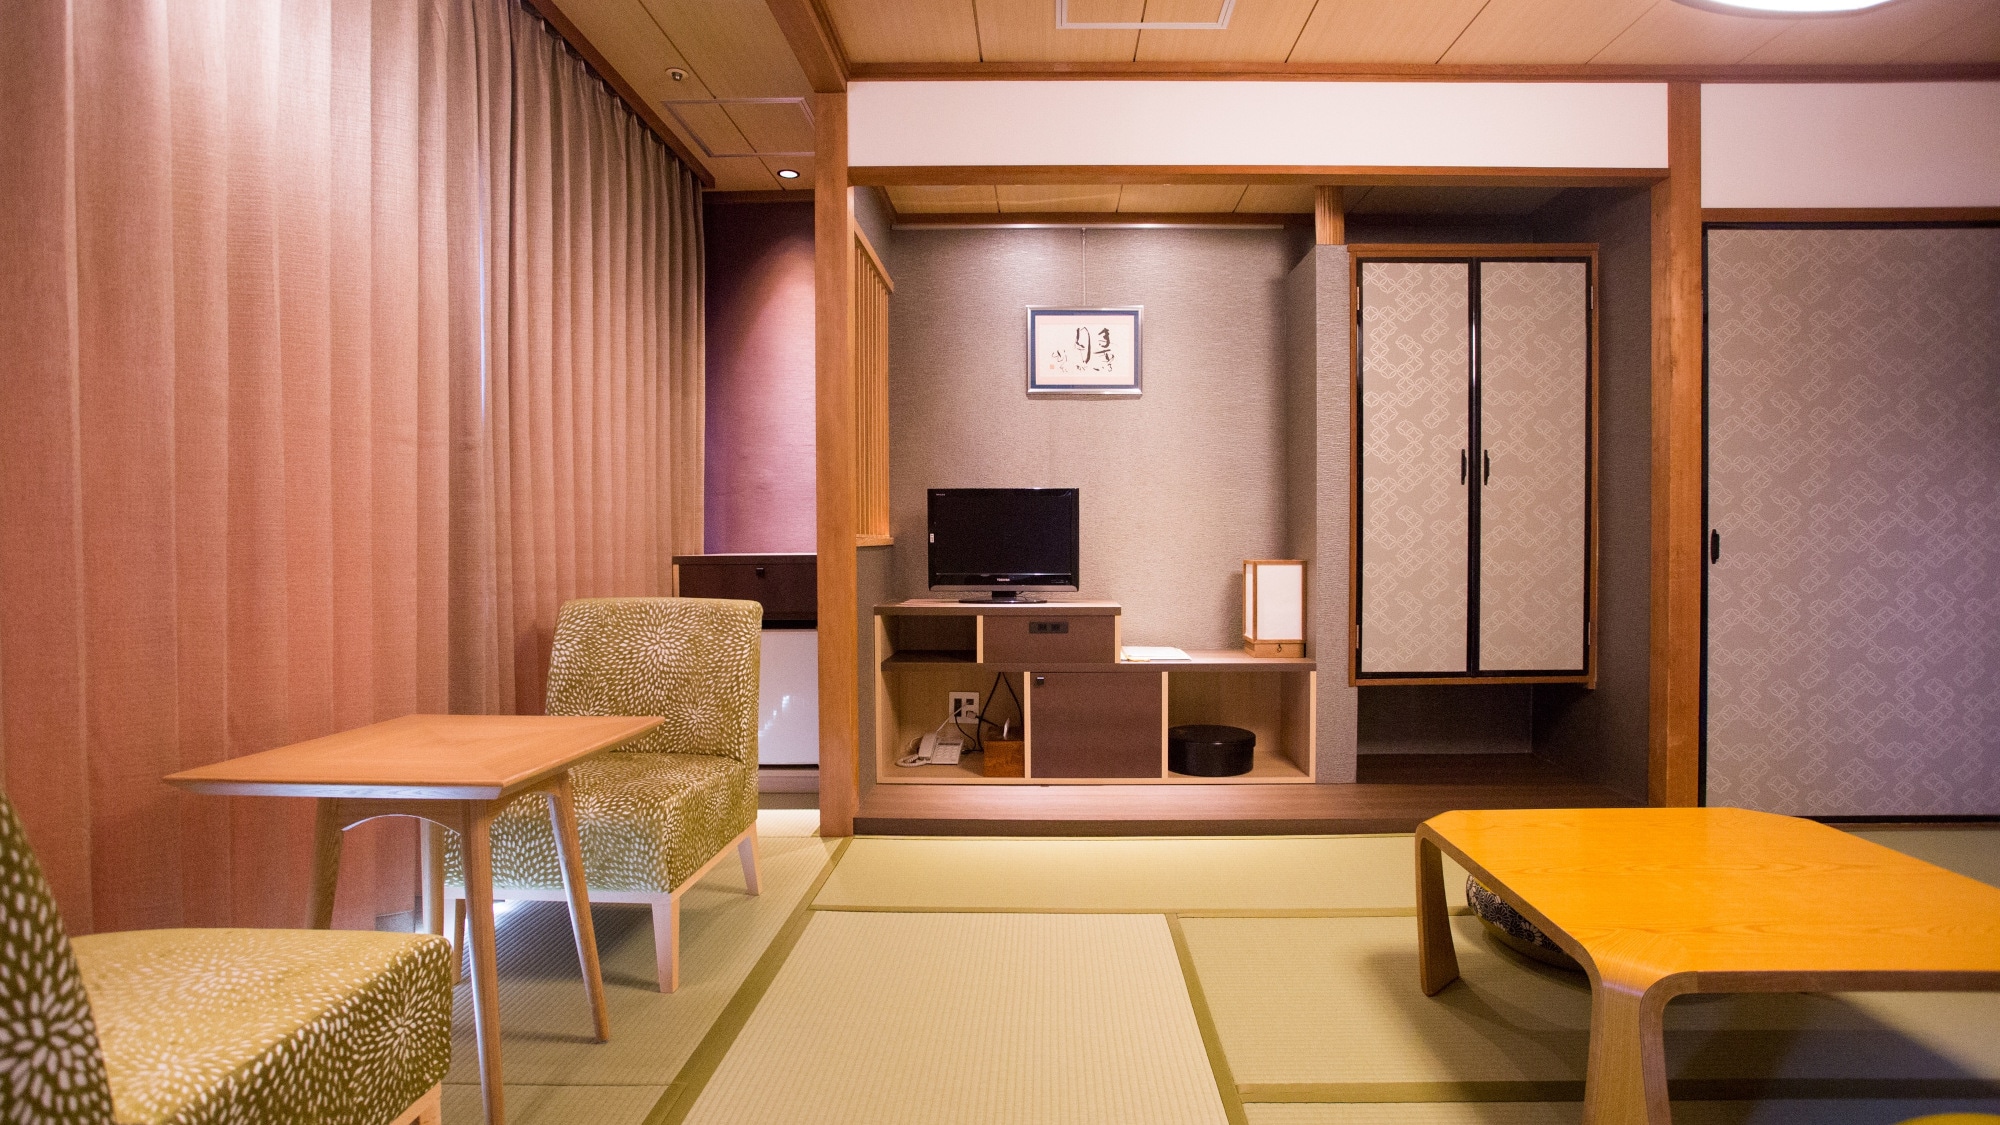 อาคารทิศใต้ 8 เสื่อทาทามิ ห้องสไตล์ญี่ปุ่น (ตัวอย่าง)